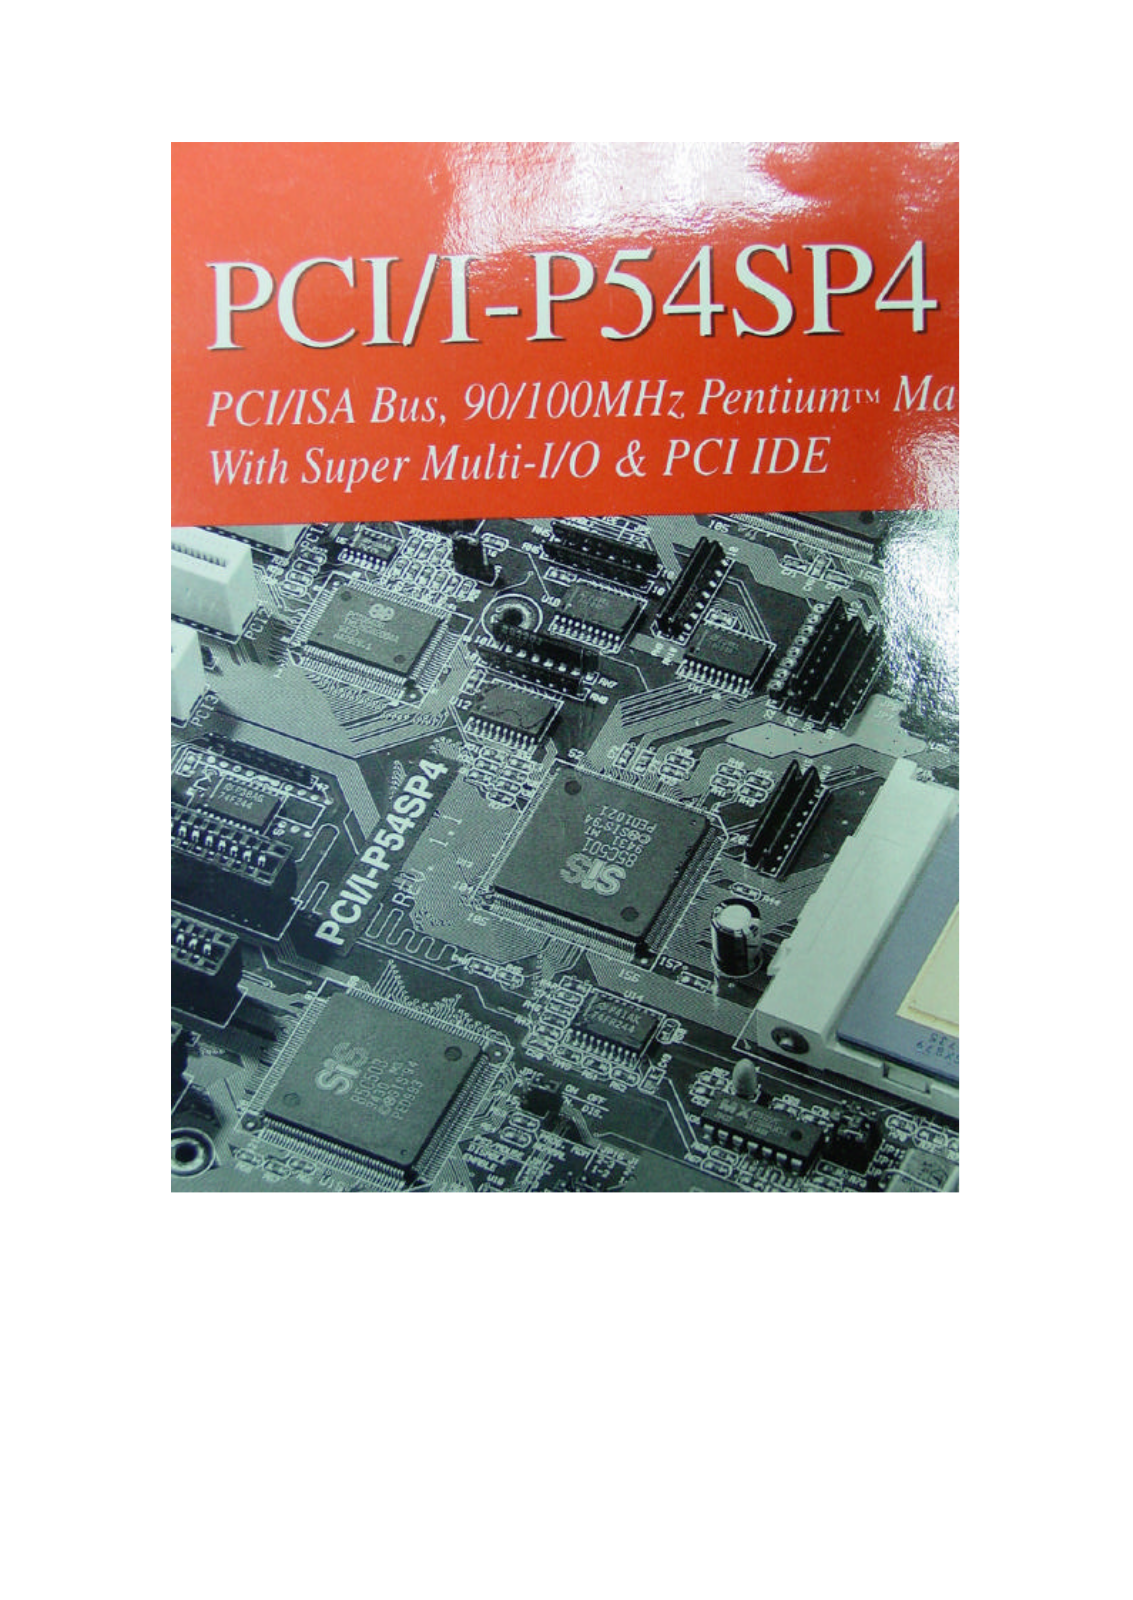 ASUS PCII-P54SP4 User Manual